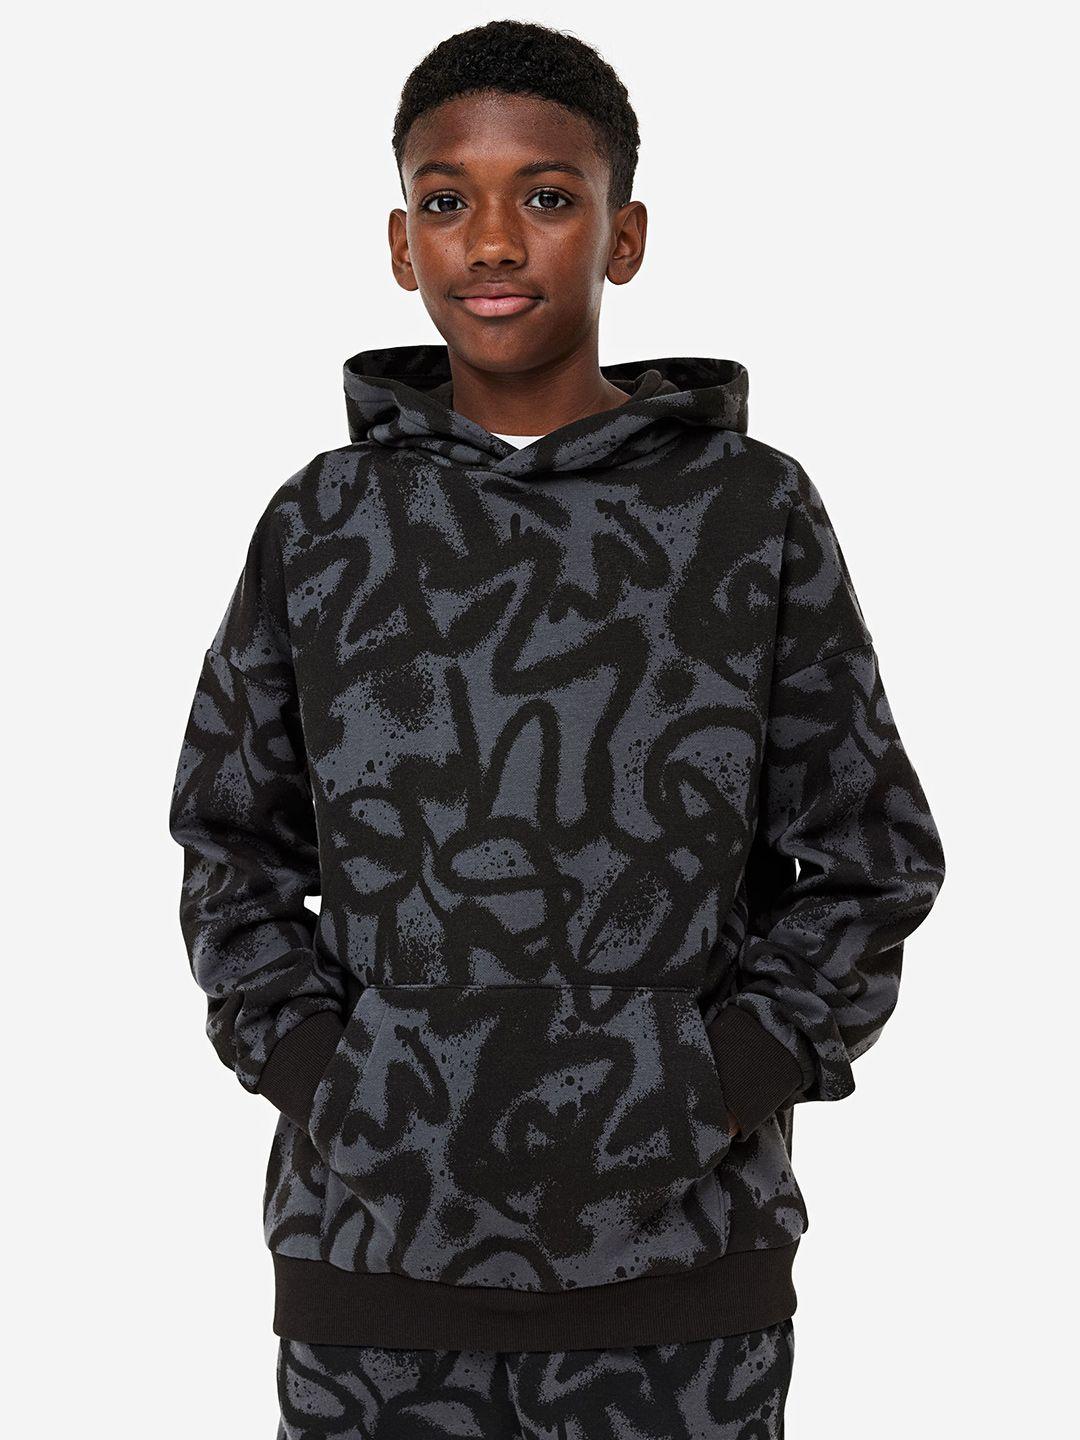 h&m-boys-patterned-hoodie